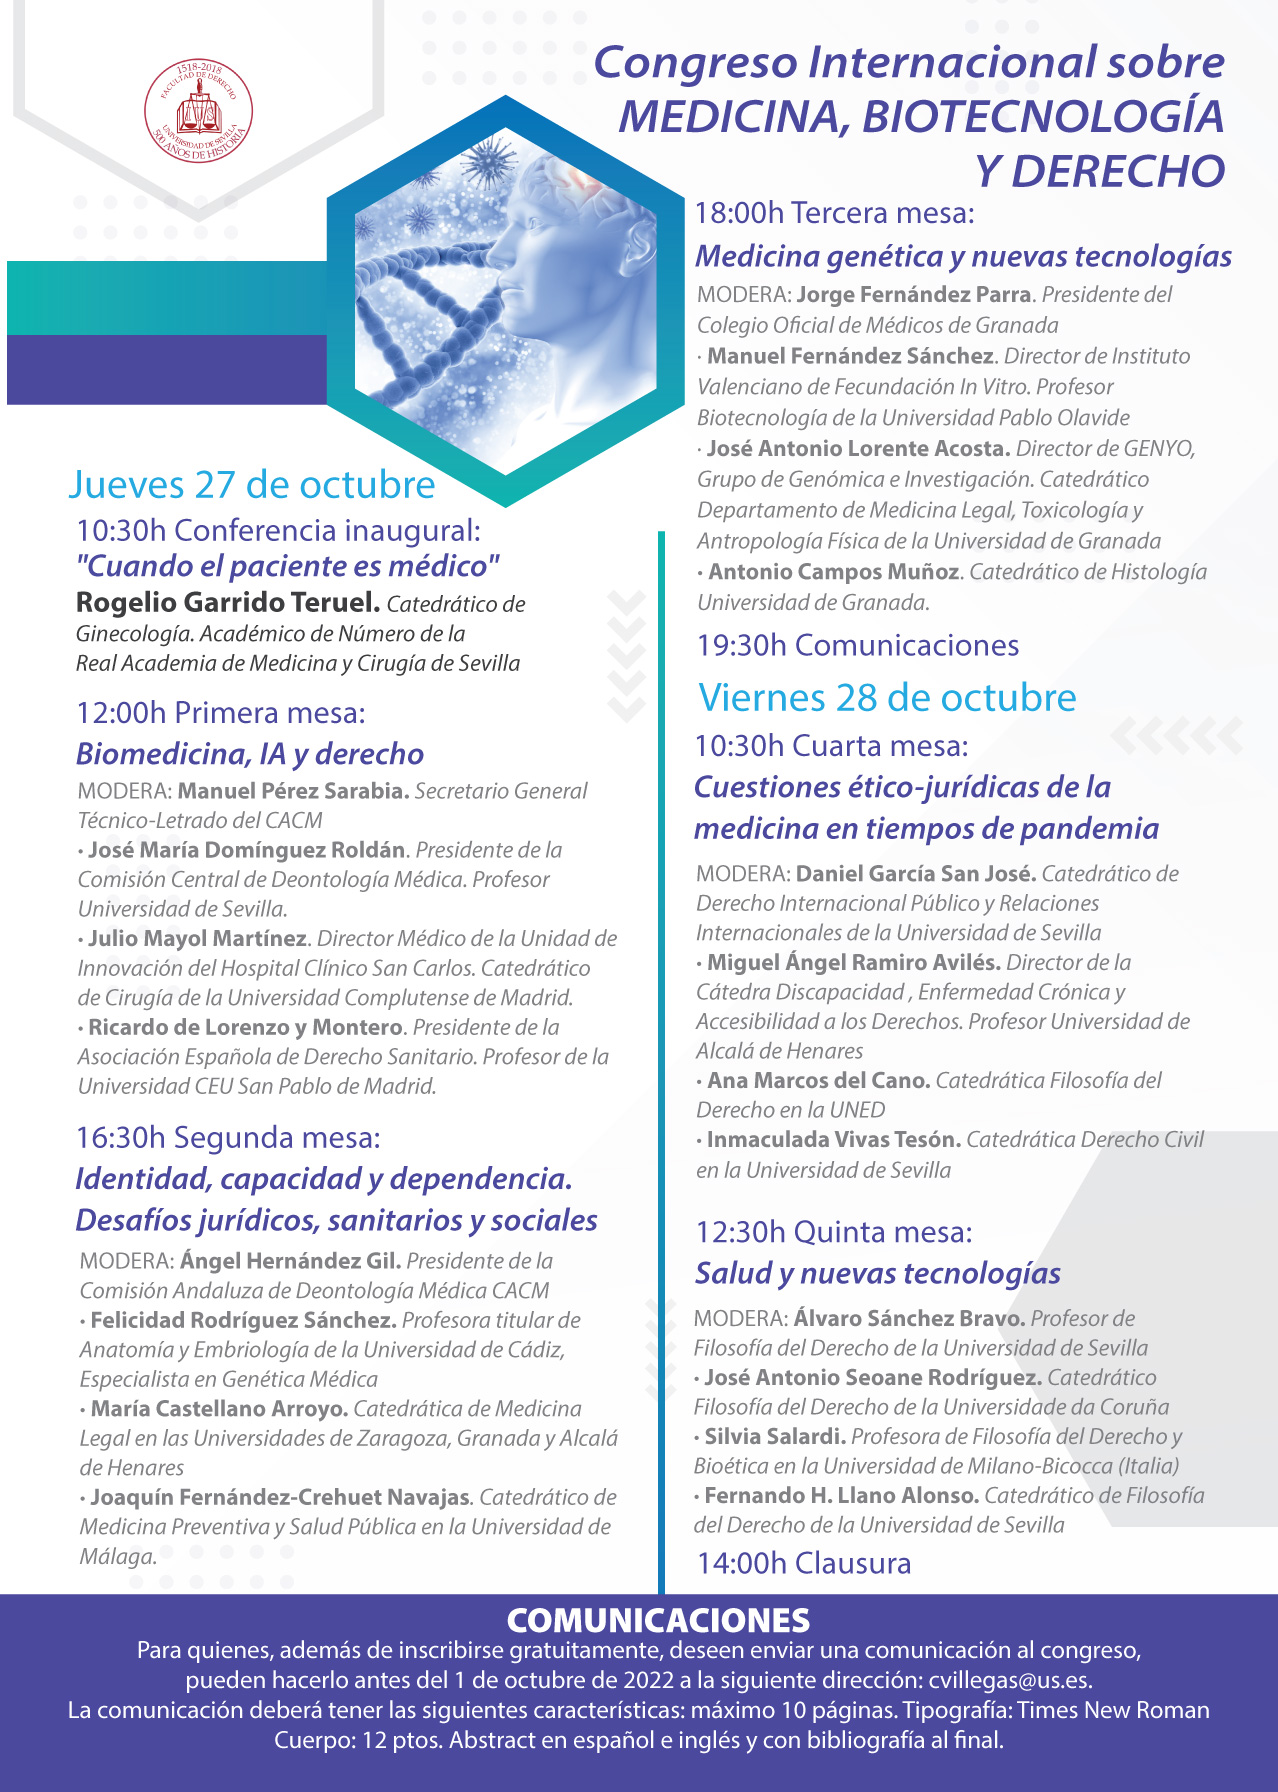 (Italiano) 27 e 28 ottobre 2022 – Congreso Internacional sobre MEDICINA, BIOTECNOLOGÍA Y DERECHO